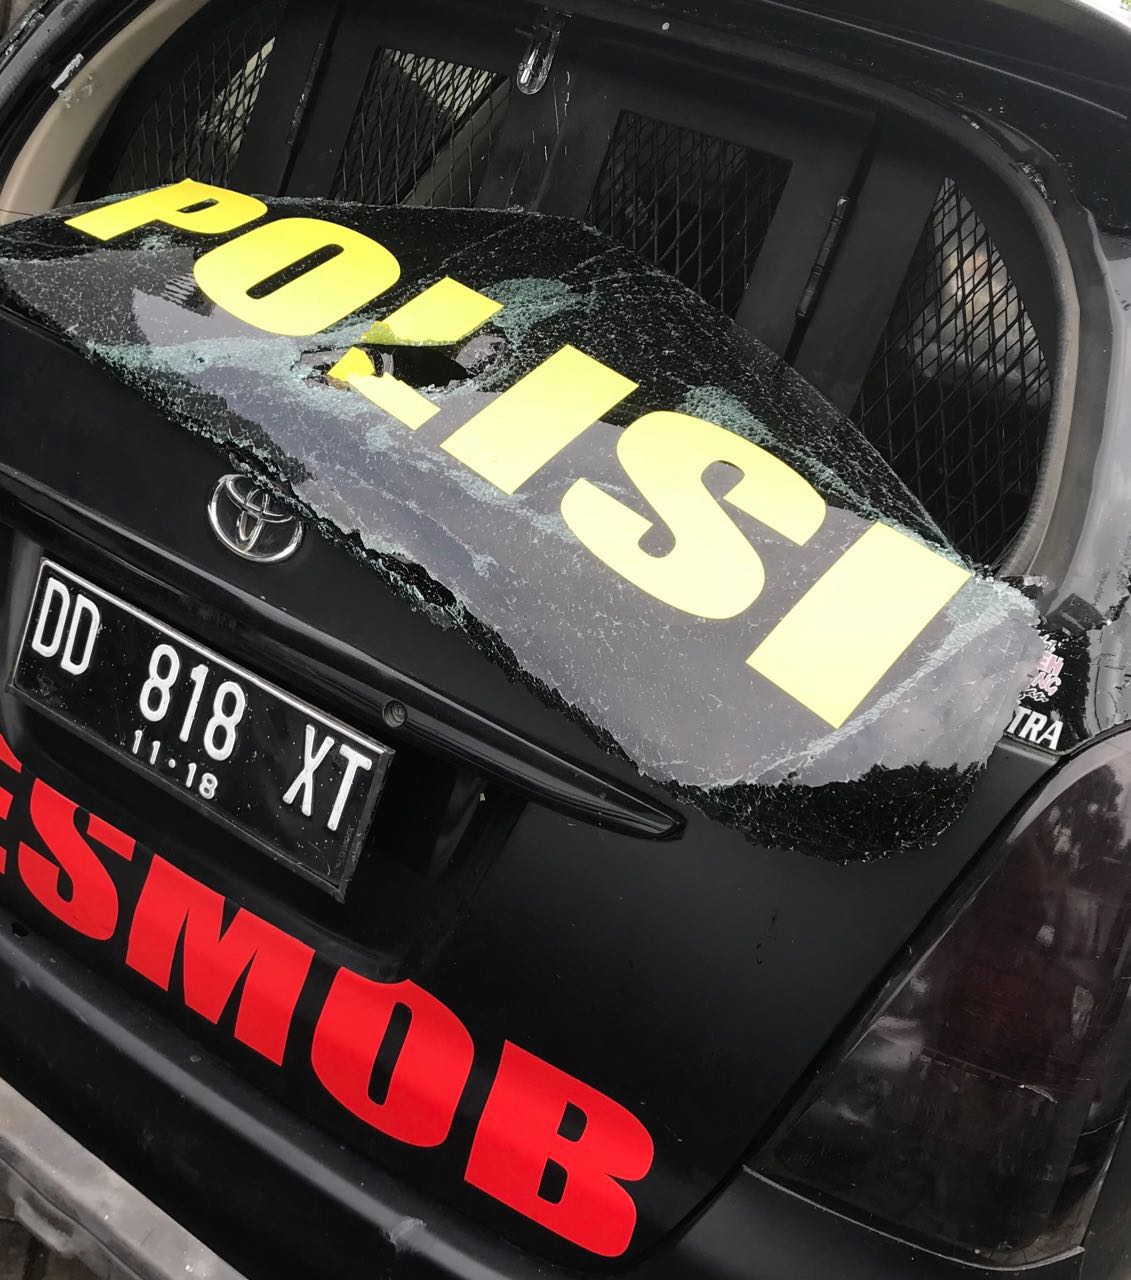 Kaca belakang mobil Resmob Polda Sulsel pecah